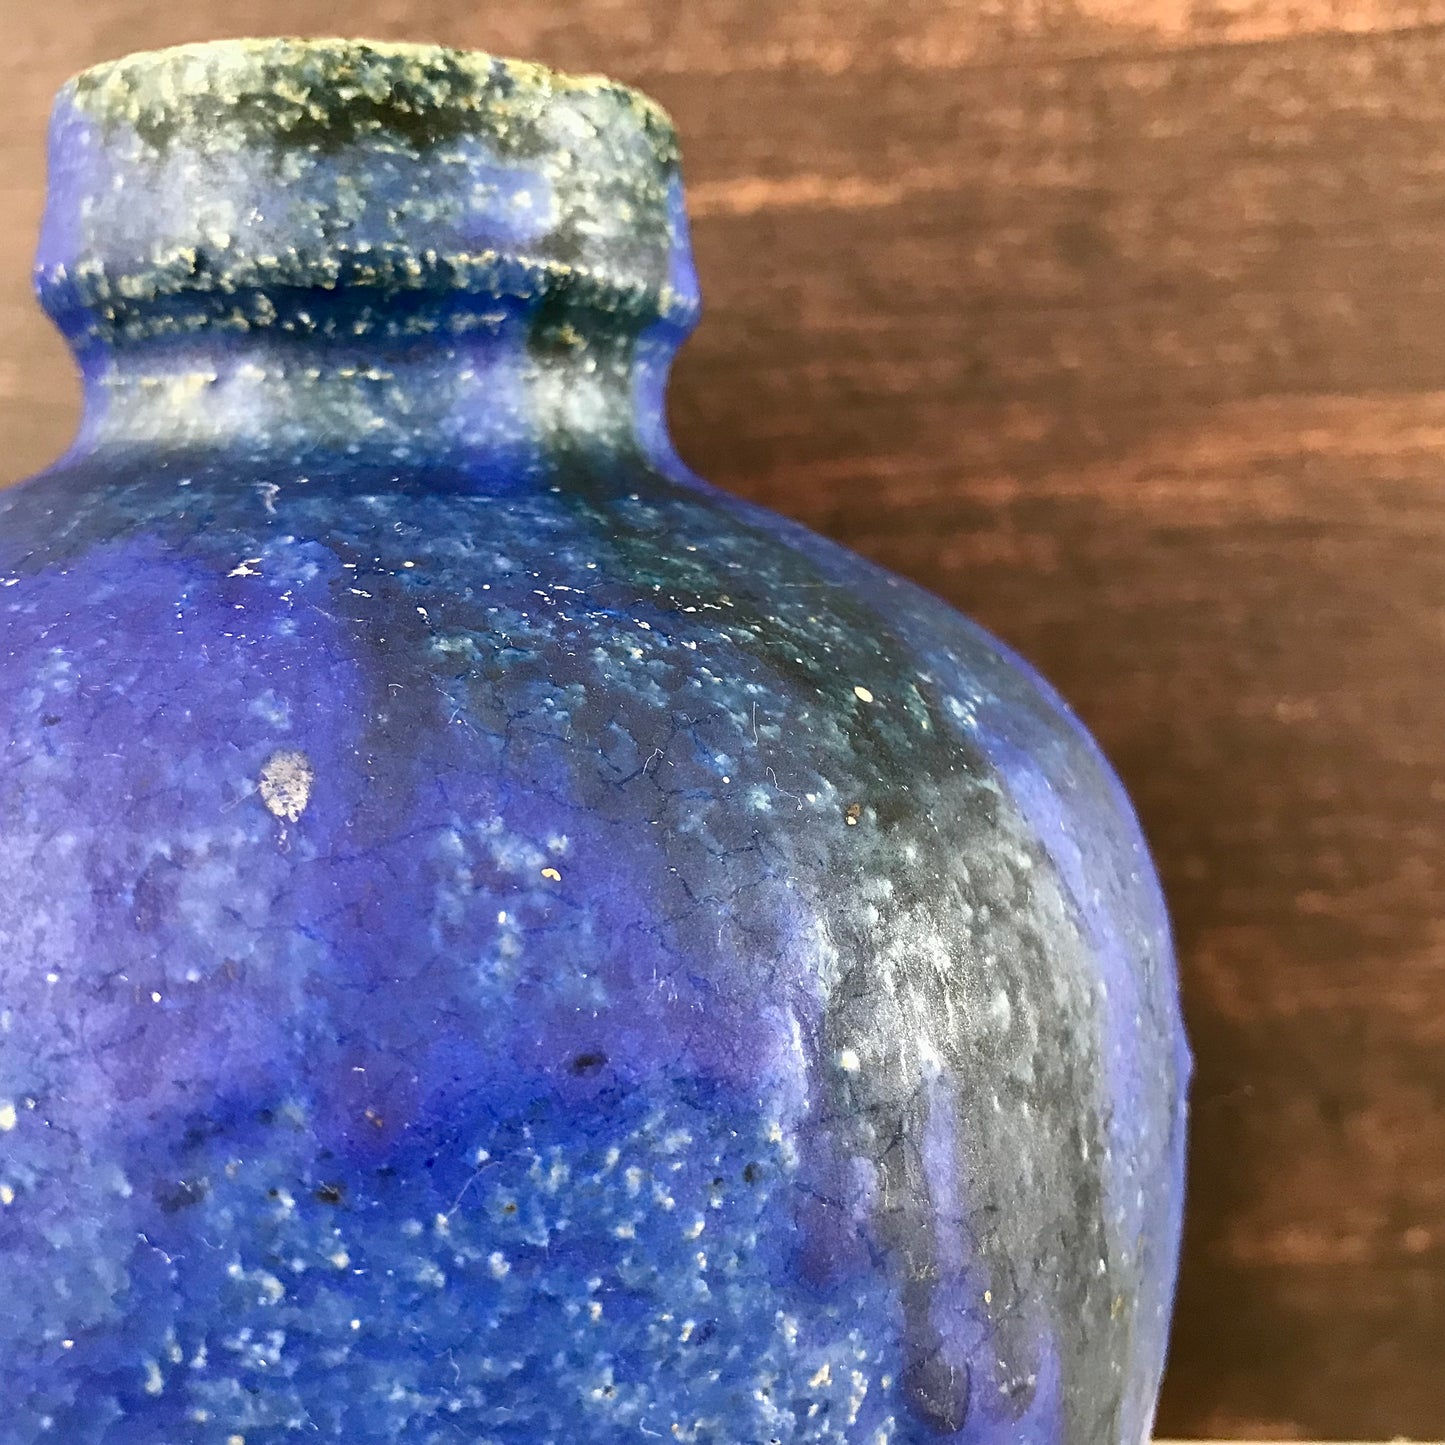 Vintage Blue Danish Studio Pottery Ceramic Vase 1970s